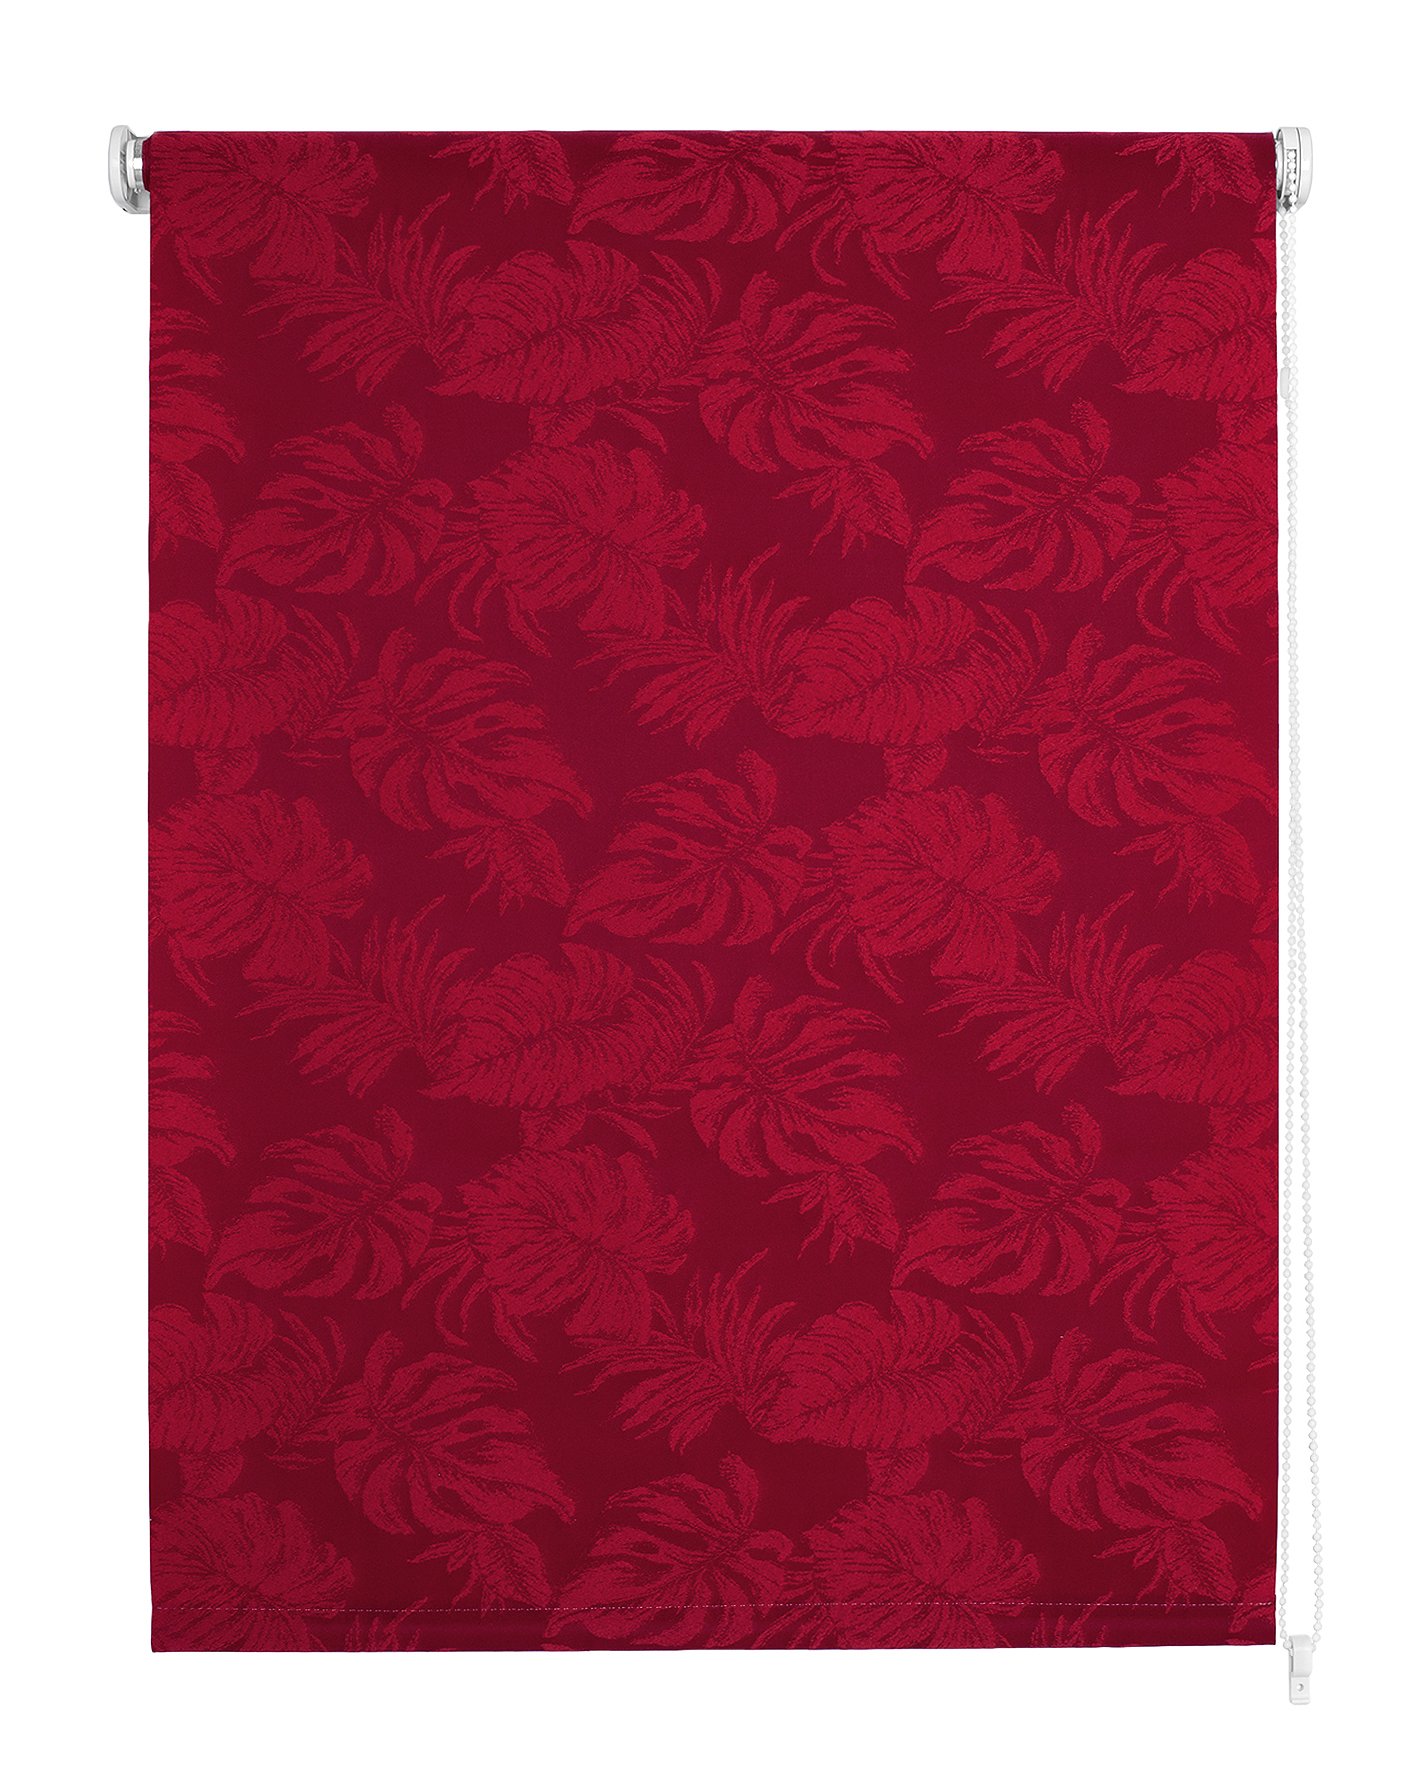 Klasikinė ritininė užuolaida OSLO, raudonos sp.,60 x 170 cm, 100 % poliesteris - 4